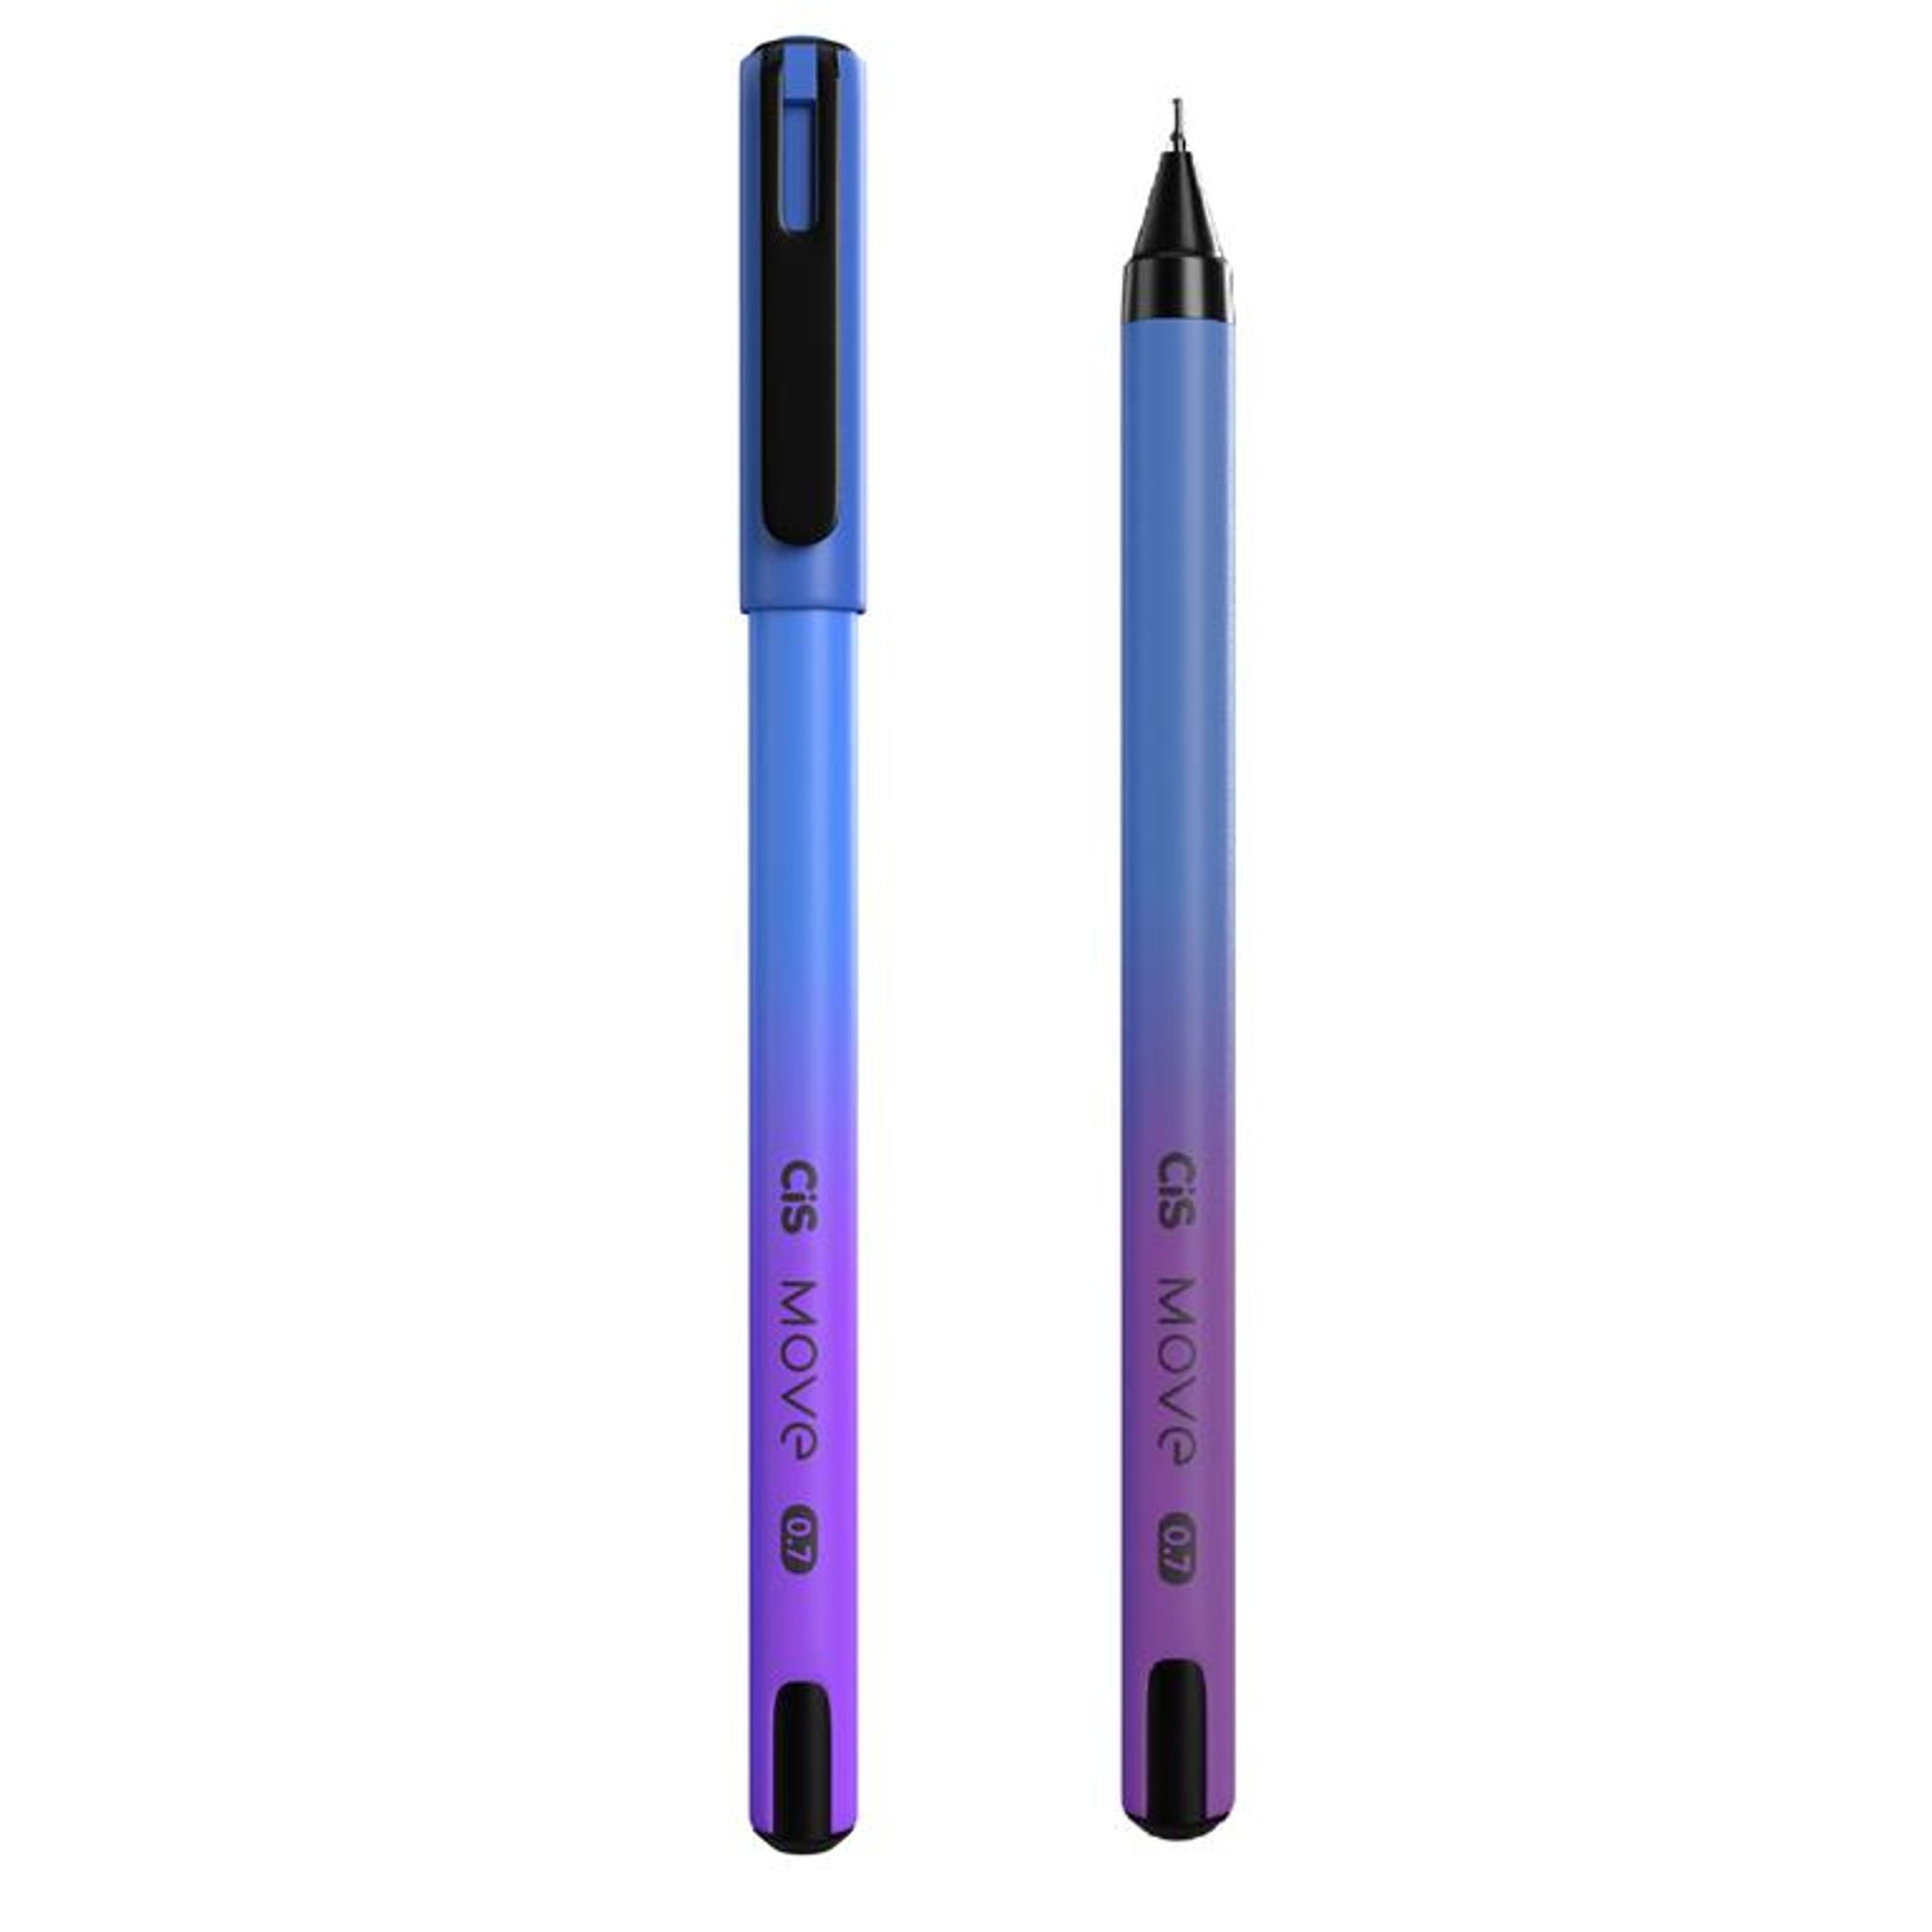 Lápis de Cor MOVE 12 cores- CIS - Atacado Mabel